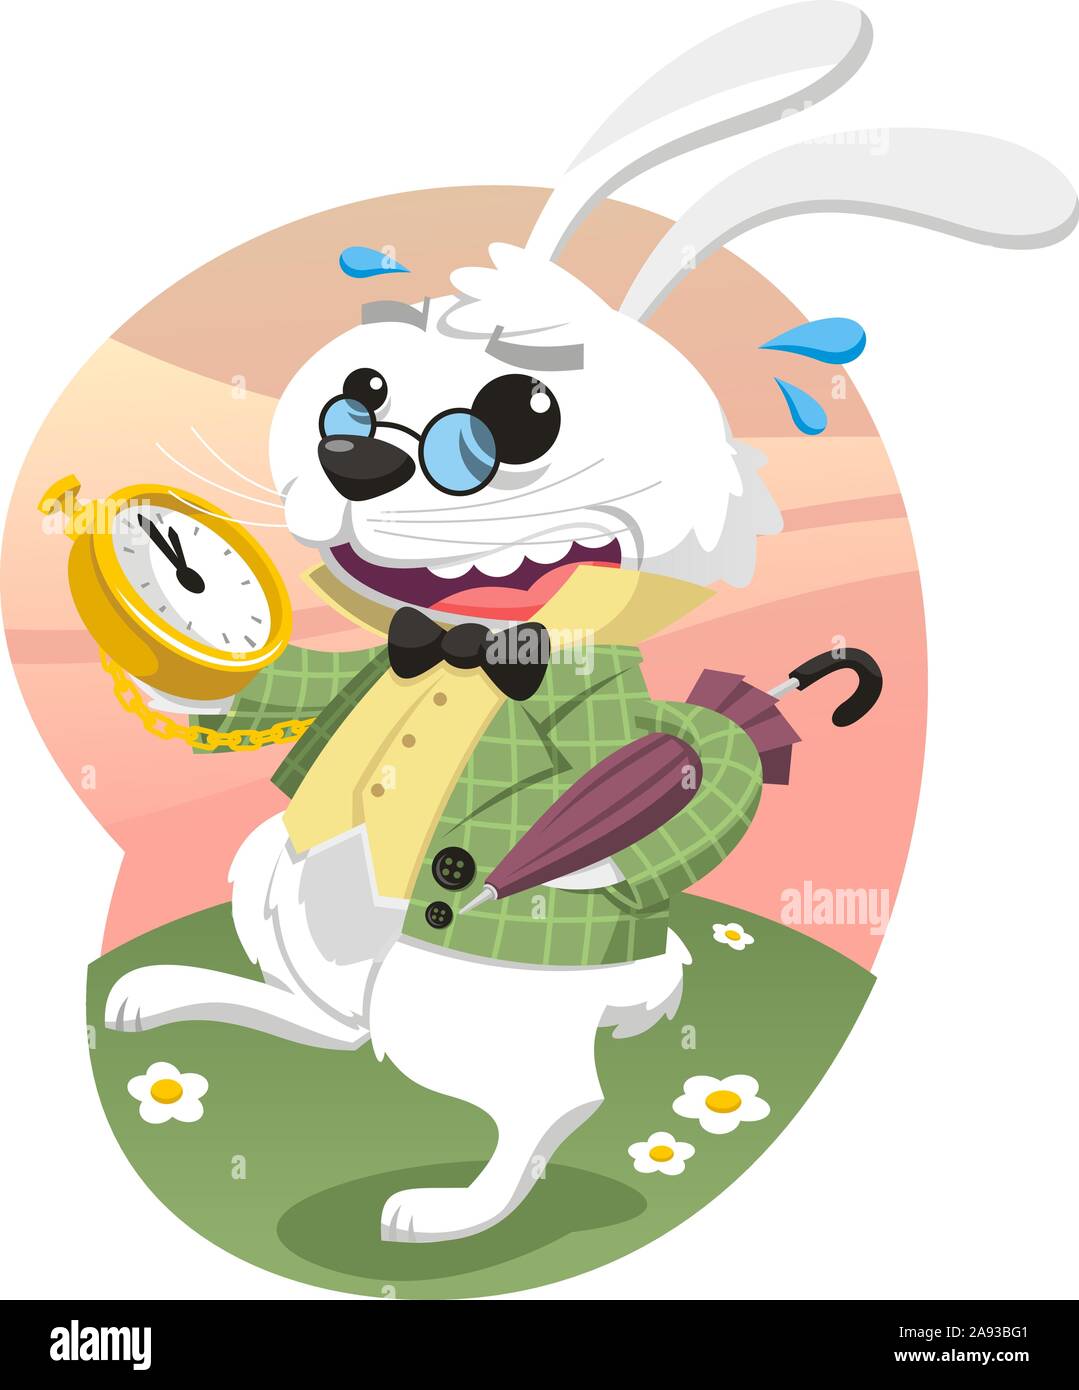 Alice's Adventures in Wonderland Rabbit, vector illustration cartoon. Stock Vector